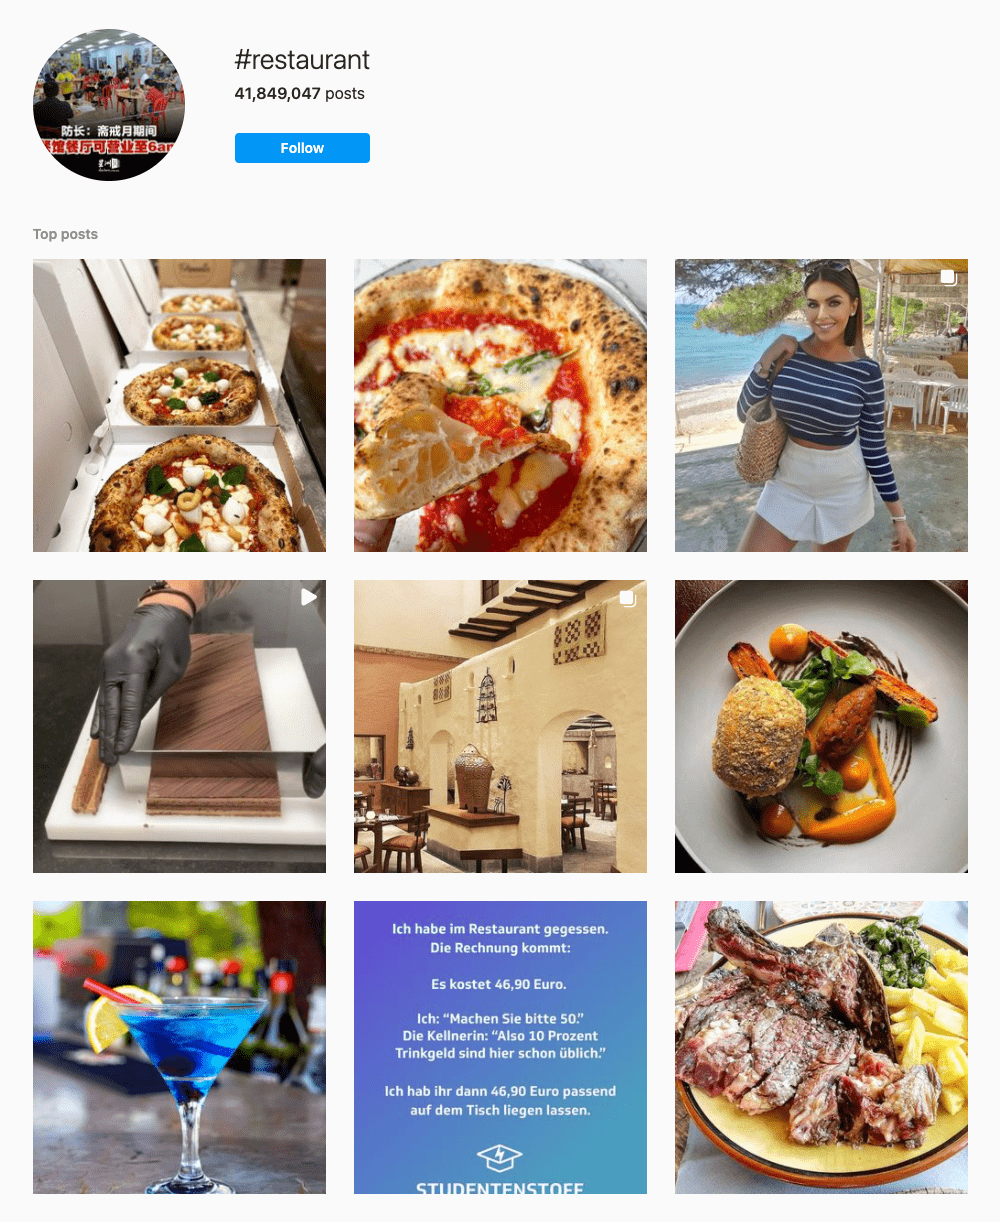 #restaurant Hashtags for Instagram